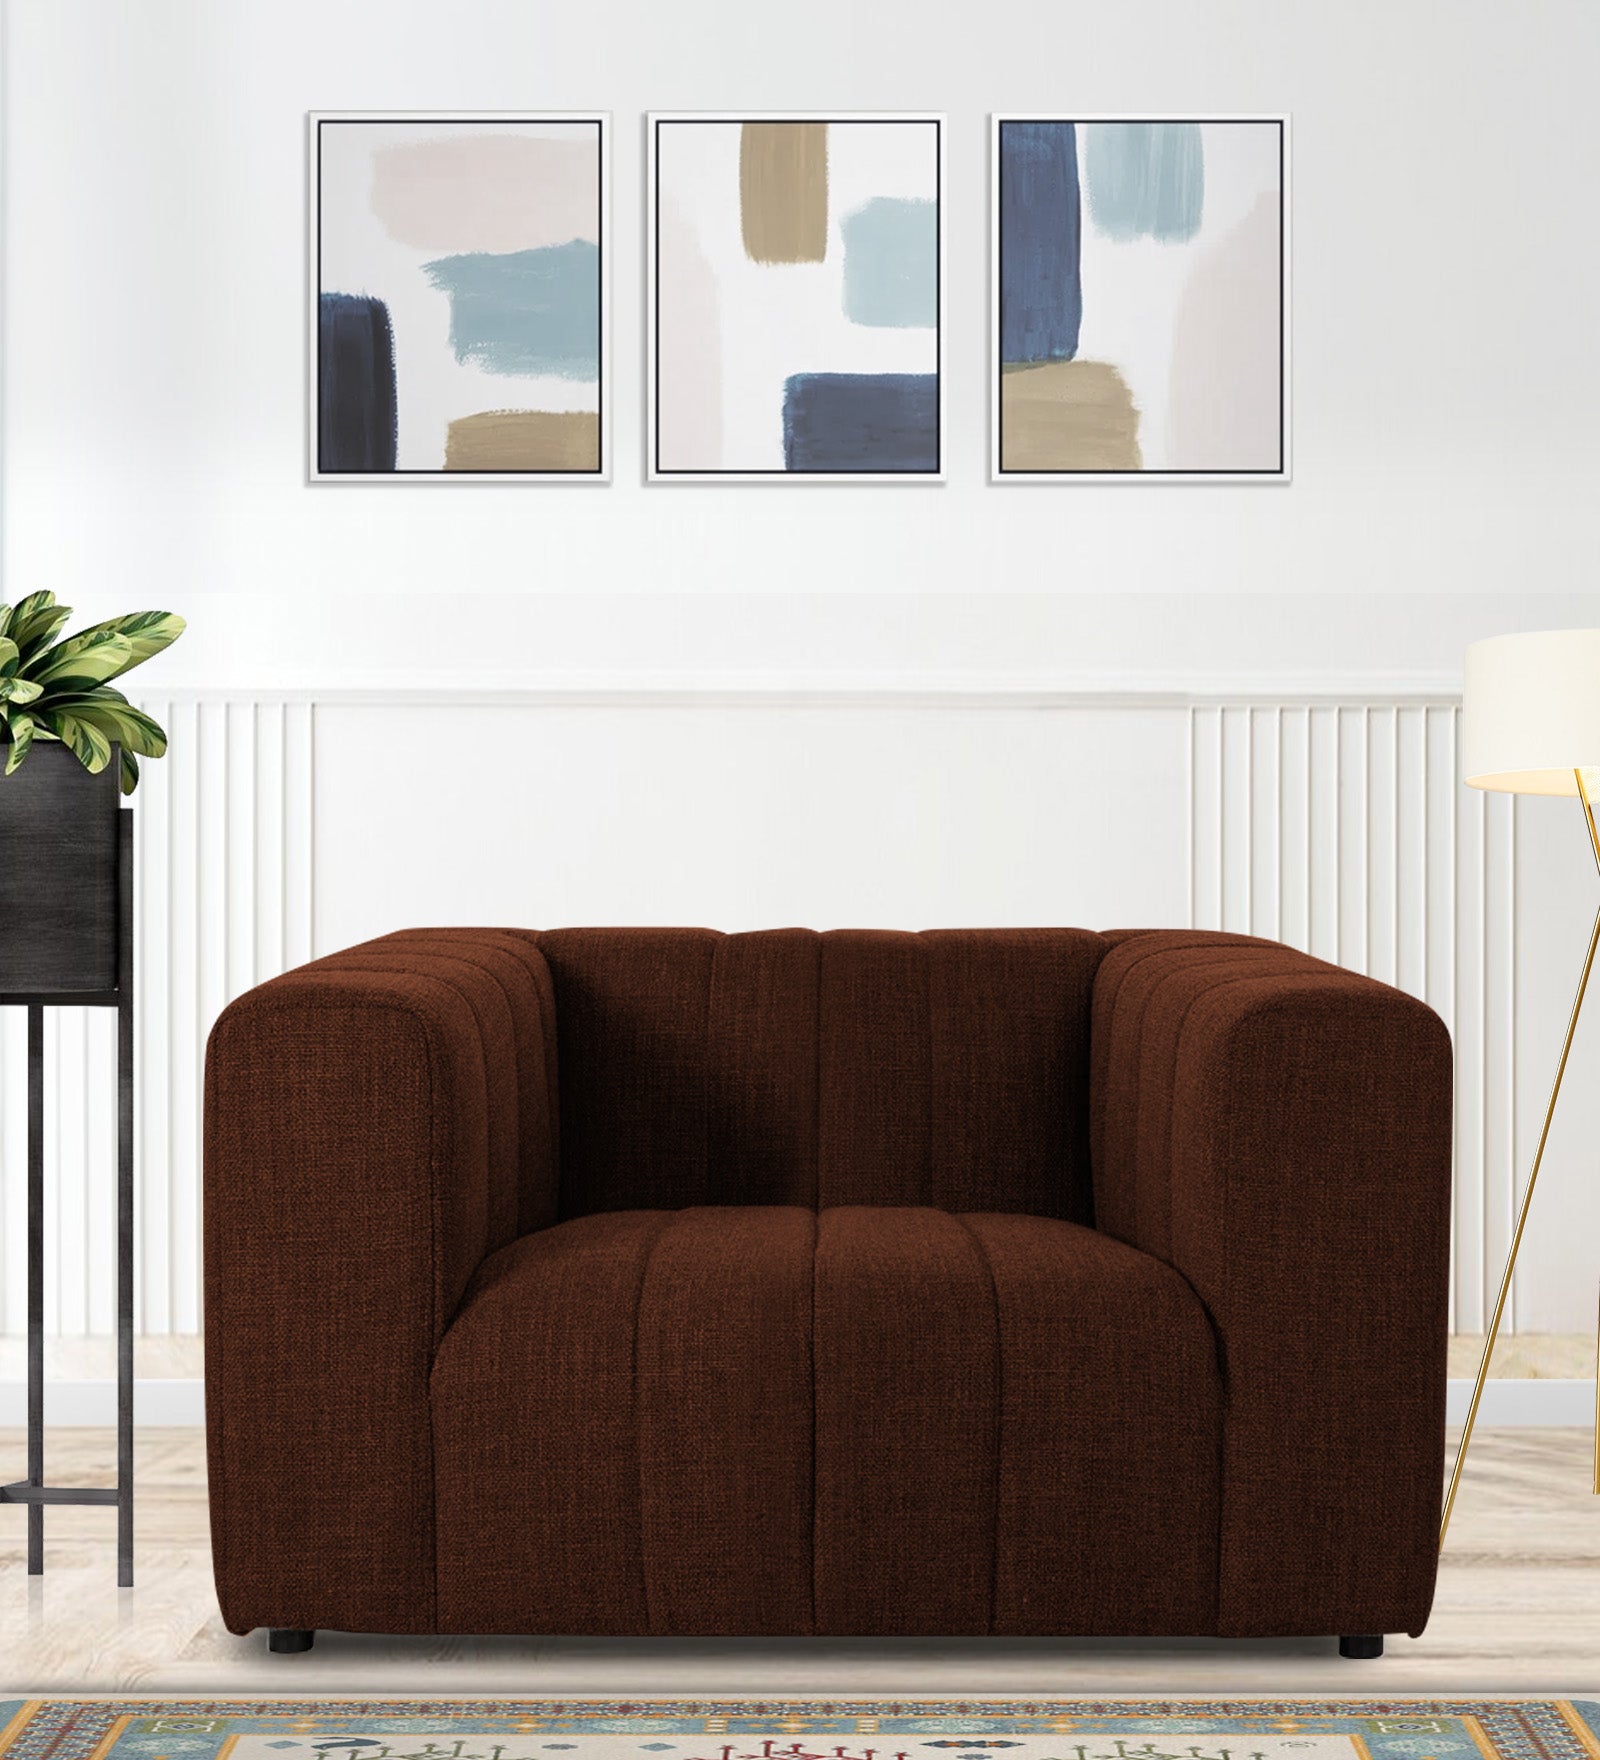 Lara Fabric 1 Seater Sofa in Coffee Brown Colour